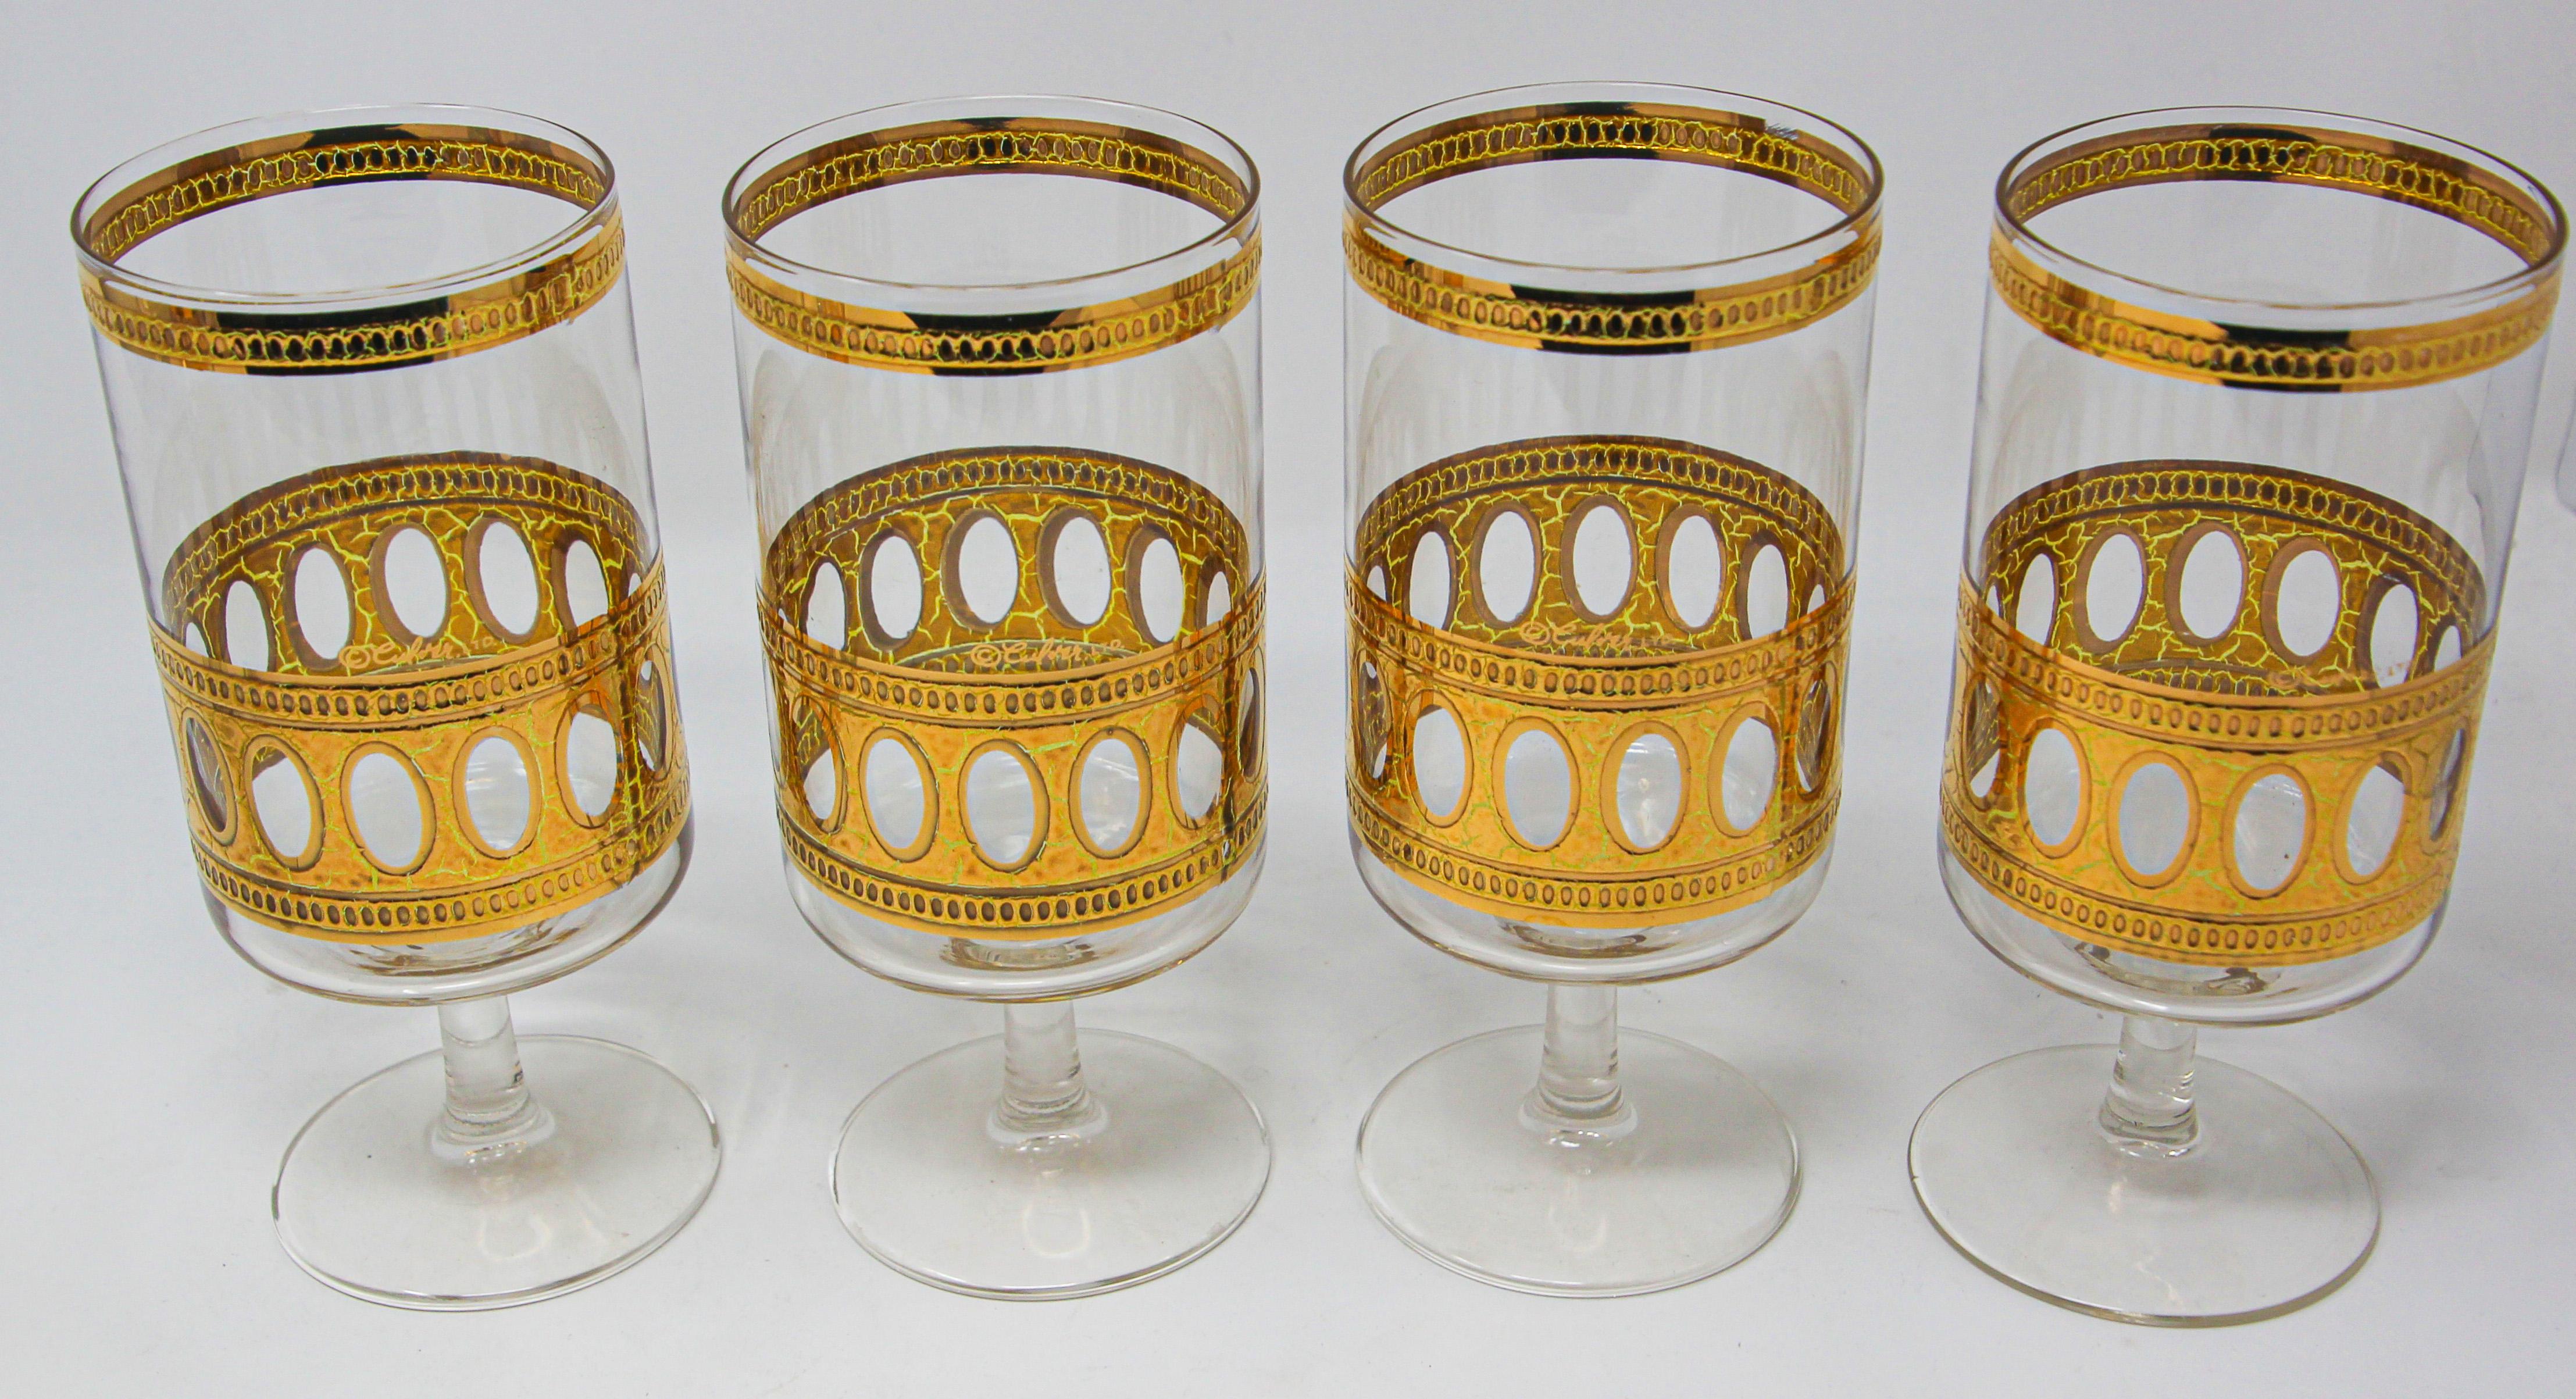 Élégants verres de bar Culver Ltd, datant du milieu du siècle dernier, avec un motif Antigua et une finition à la feuille d'or.
L'ensemble comprend 4 verres à cocktail vintage Culver midcentury, Culver Ltd Antigua Pattern Design.
Ce fabuleux